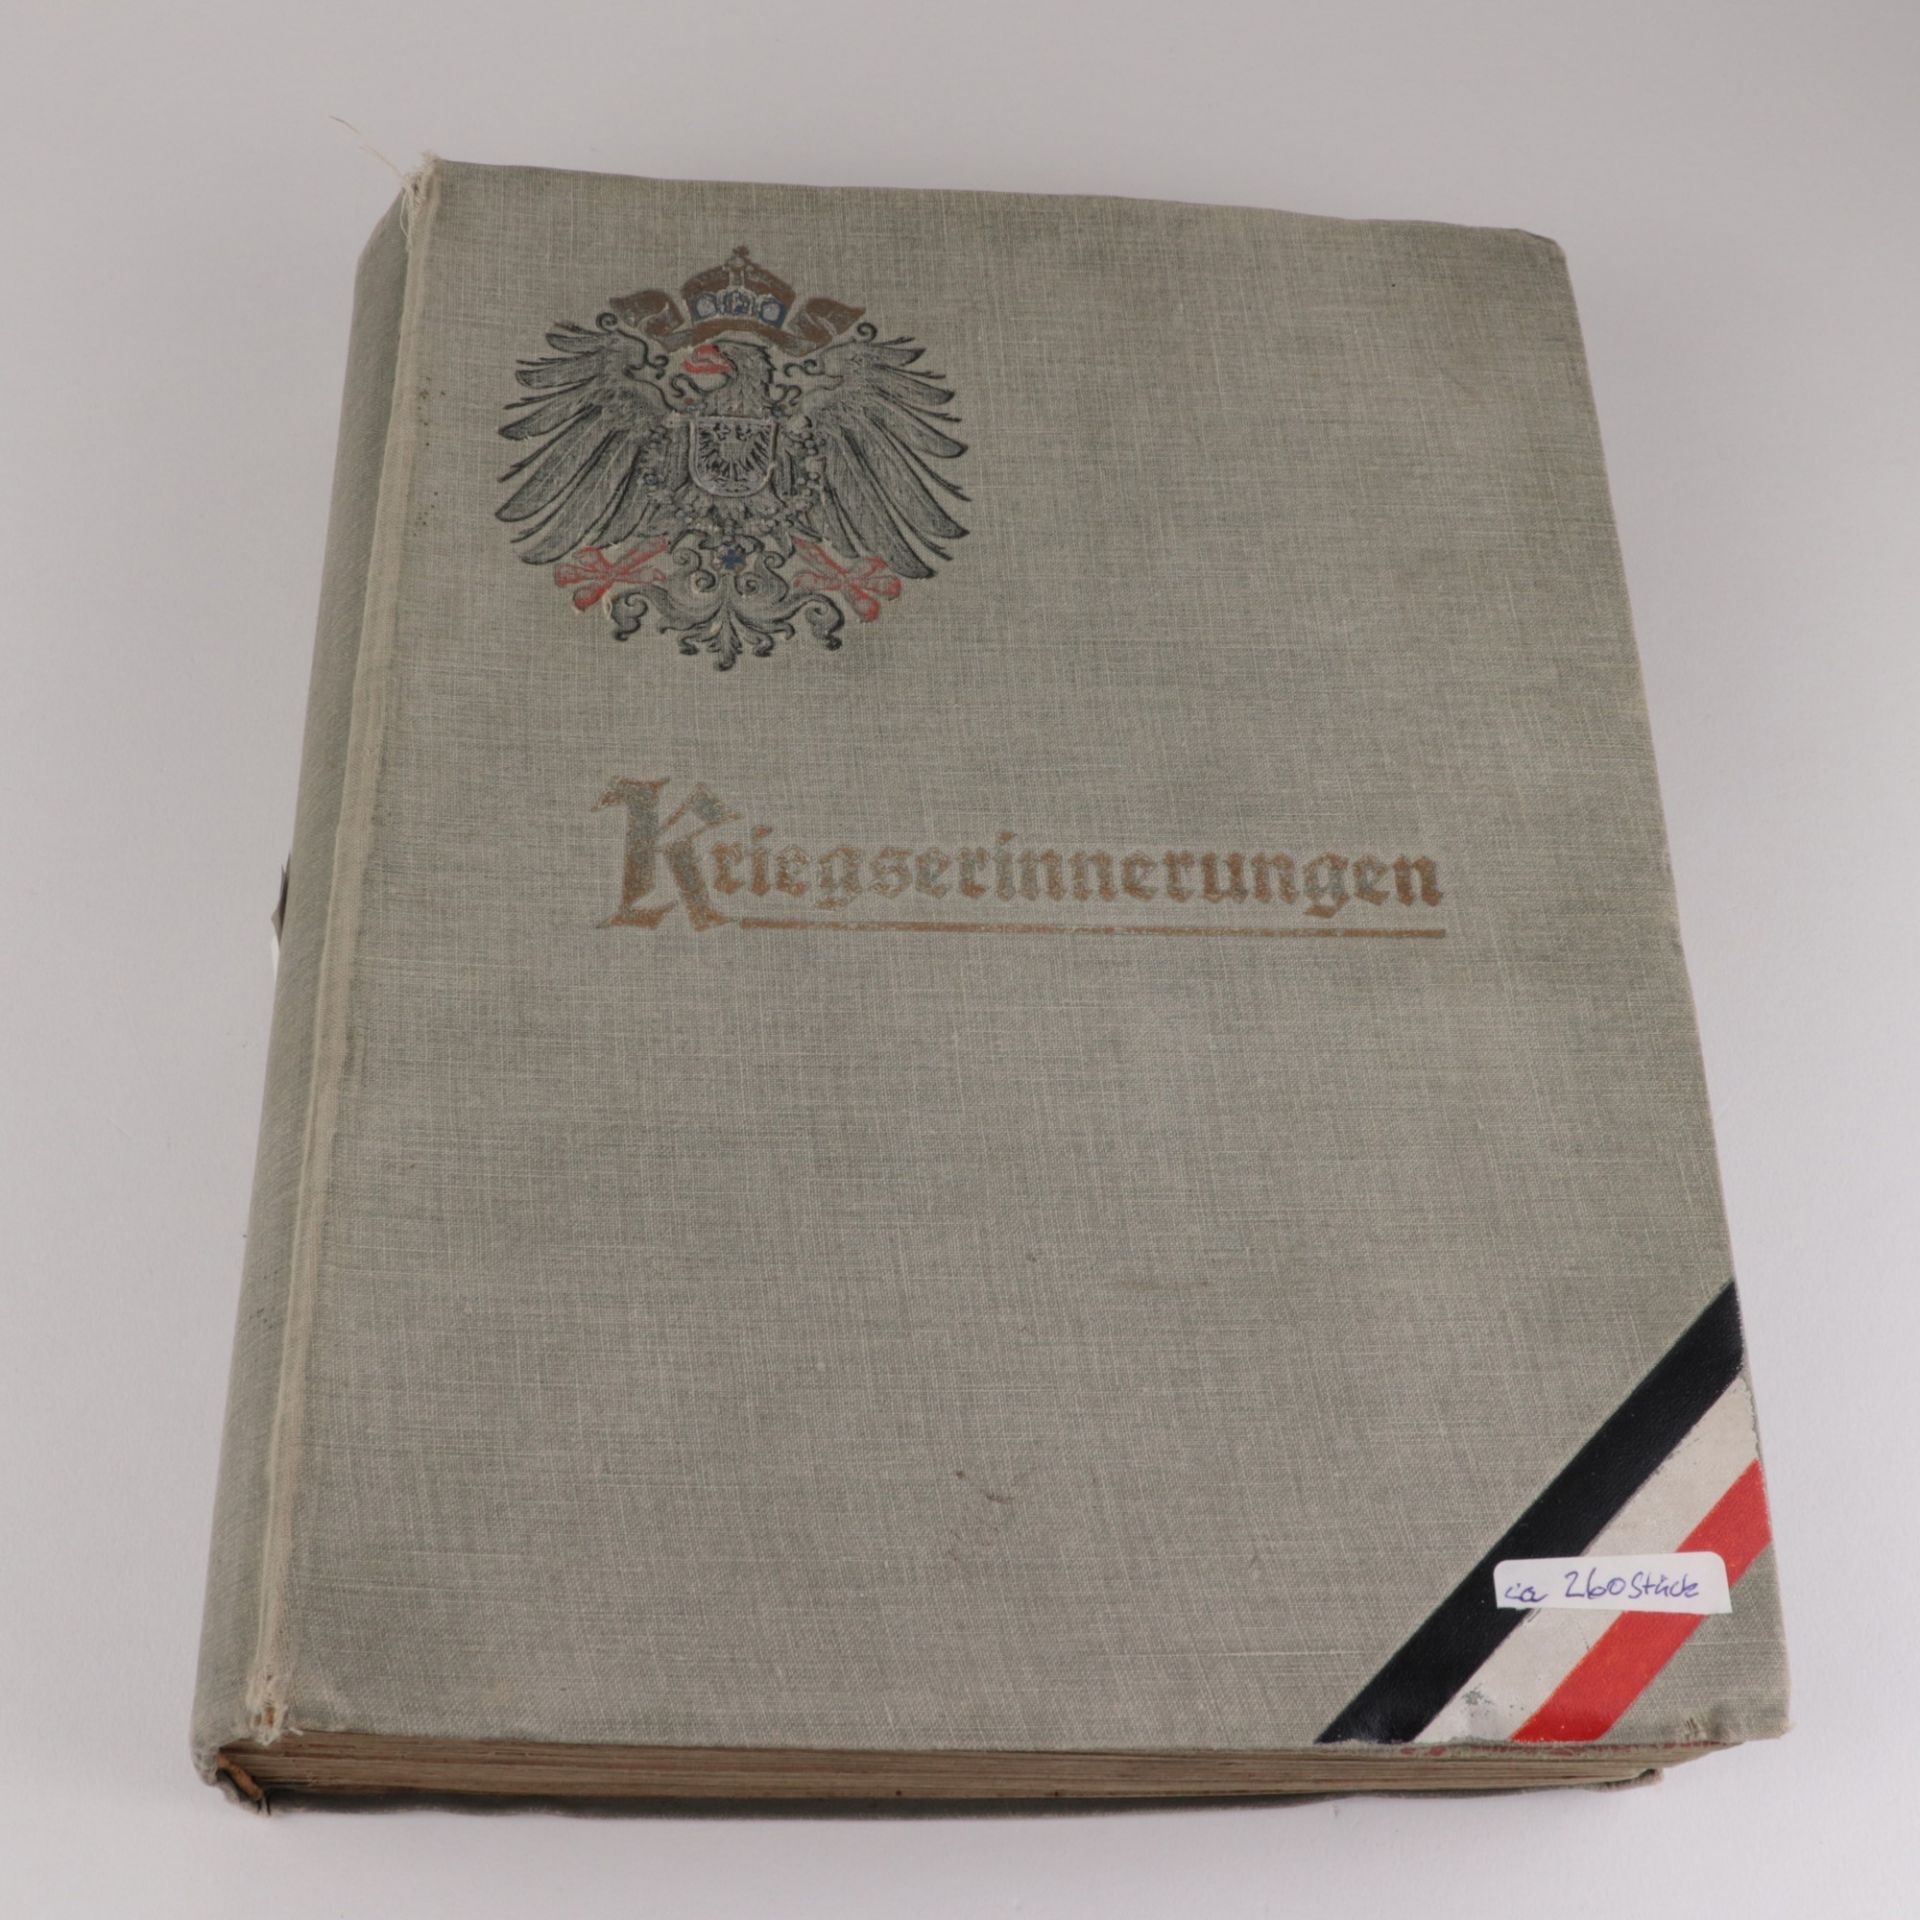 Postkartenalbum ab ca. 1900, ca. 260 St,, Aufdruck "Kriegserinnerungen", AK s./w. u. farb.